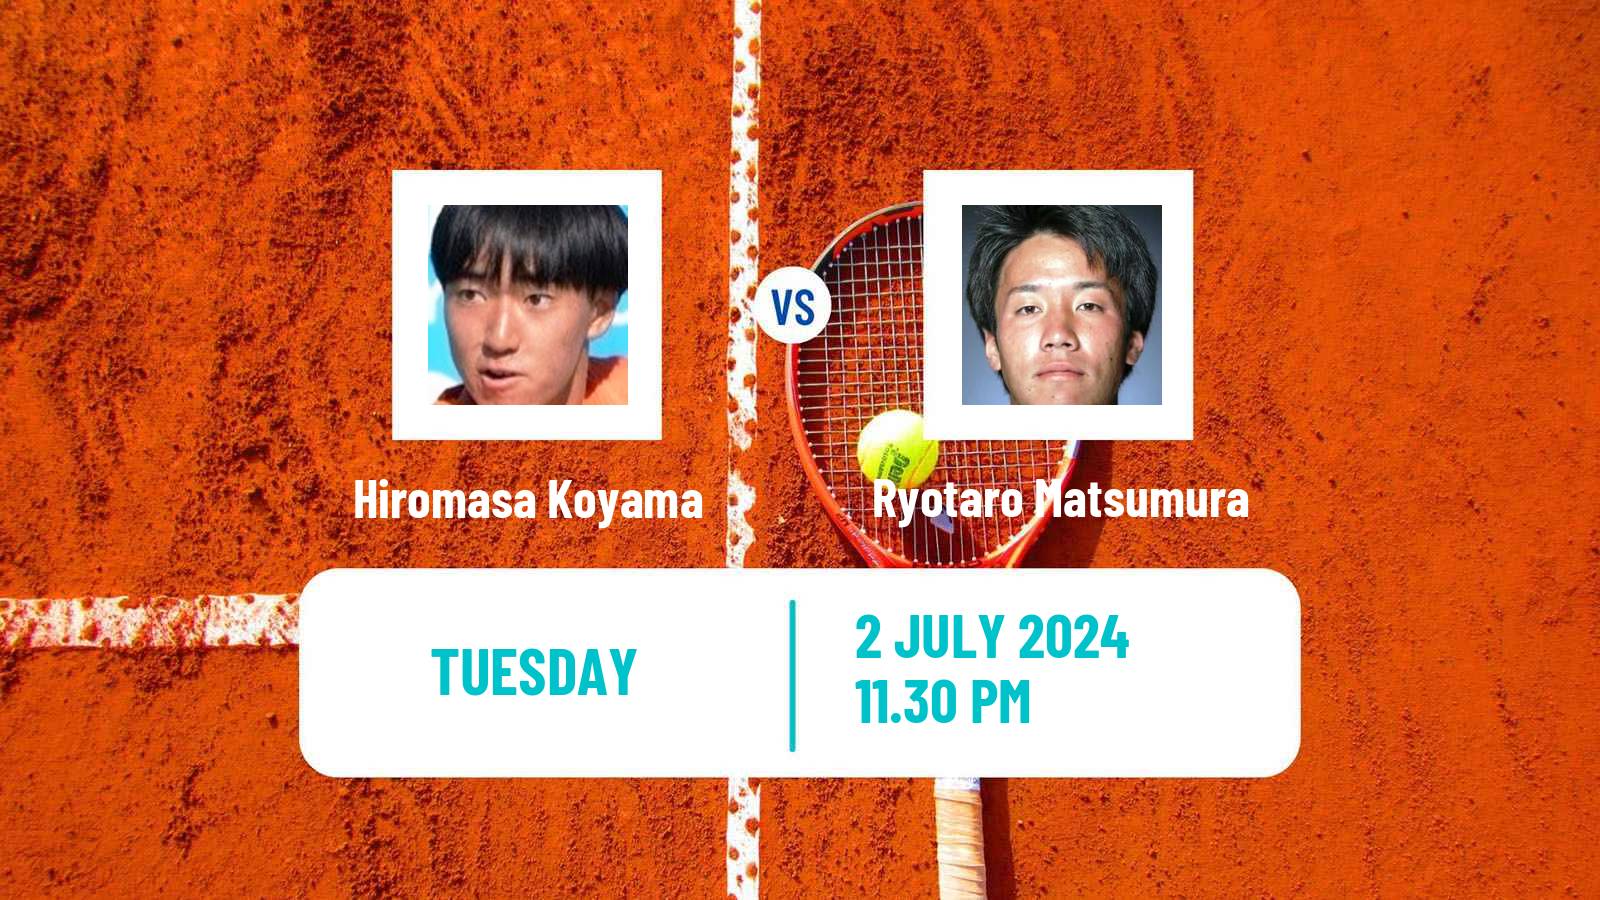 Tennis ITF M15 Tokyo Men Hiromasa Koyama - Ryotaro Matsumura